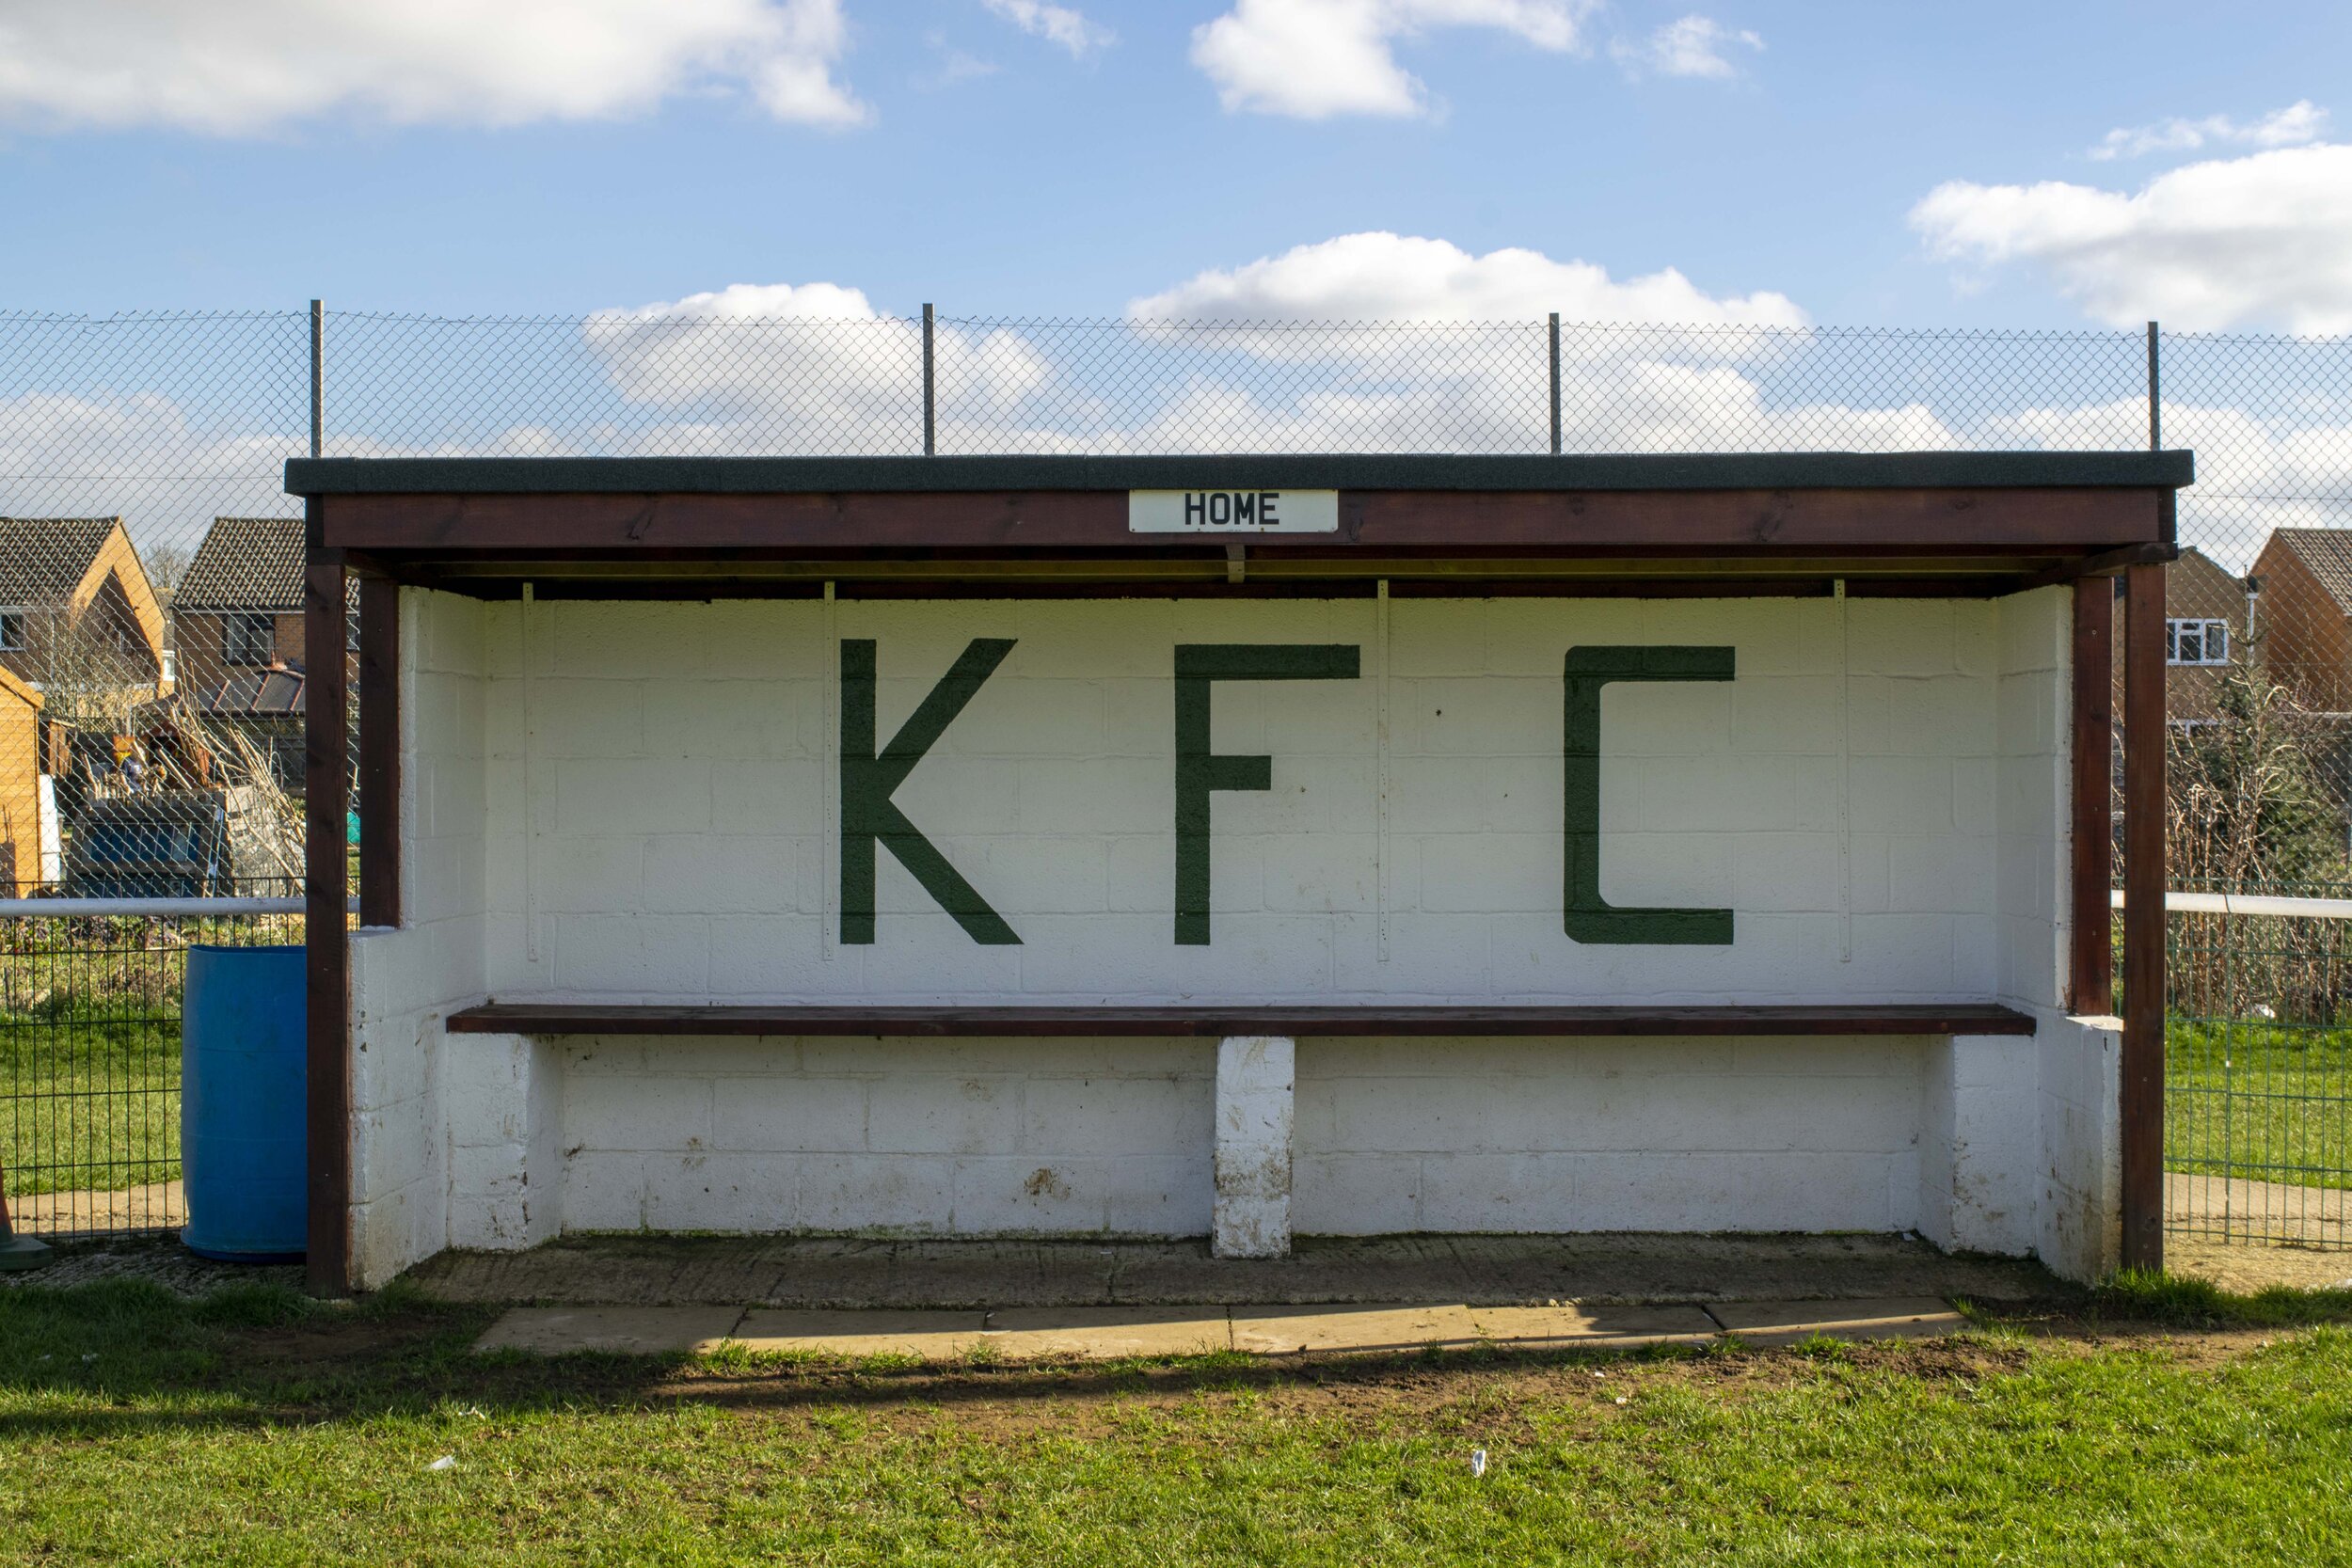 Kidlington FC